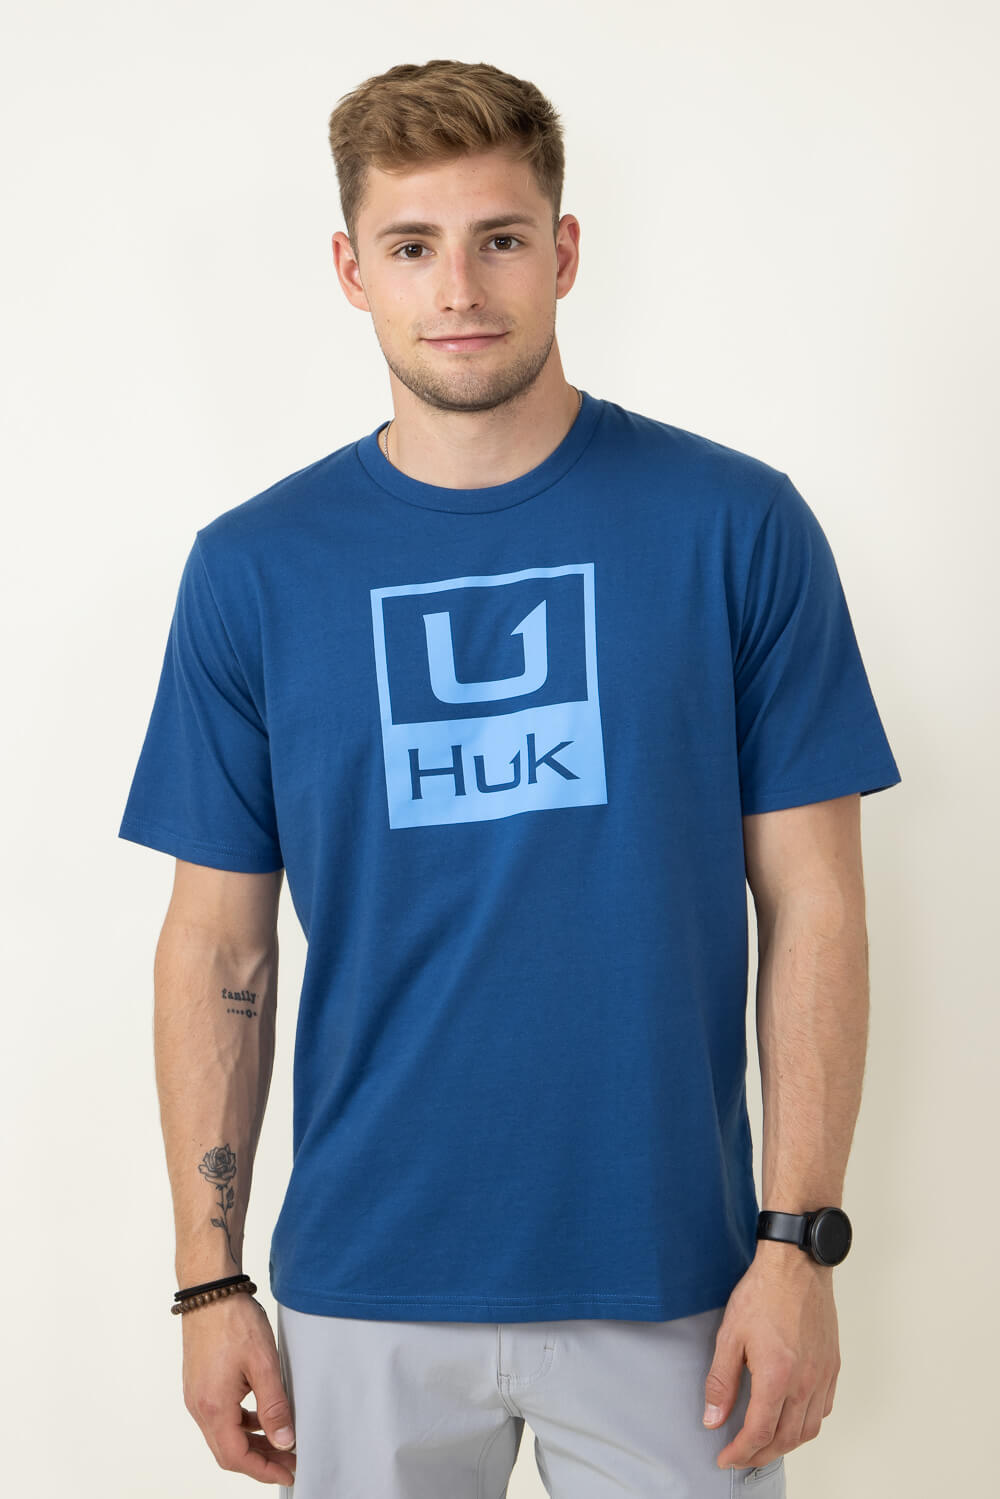 Huk Men's Stacked Logo Tee in Set Sail - L